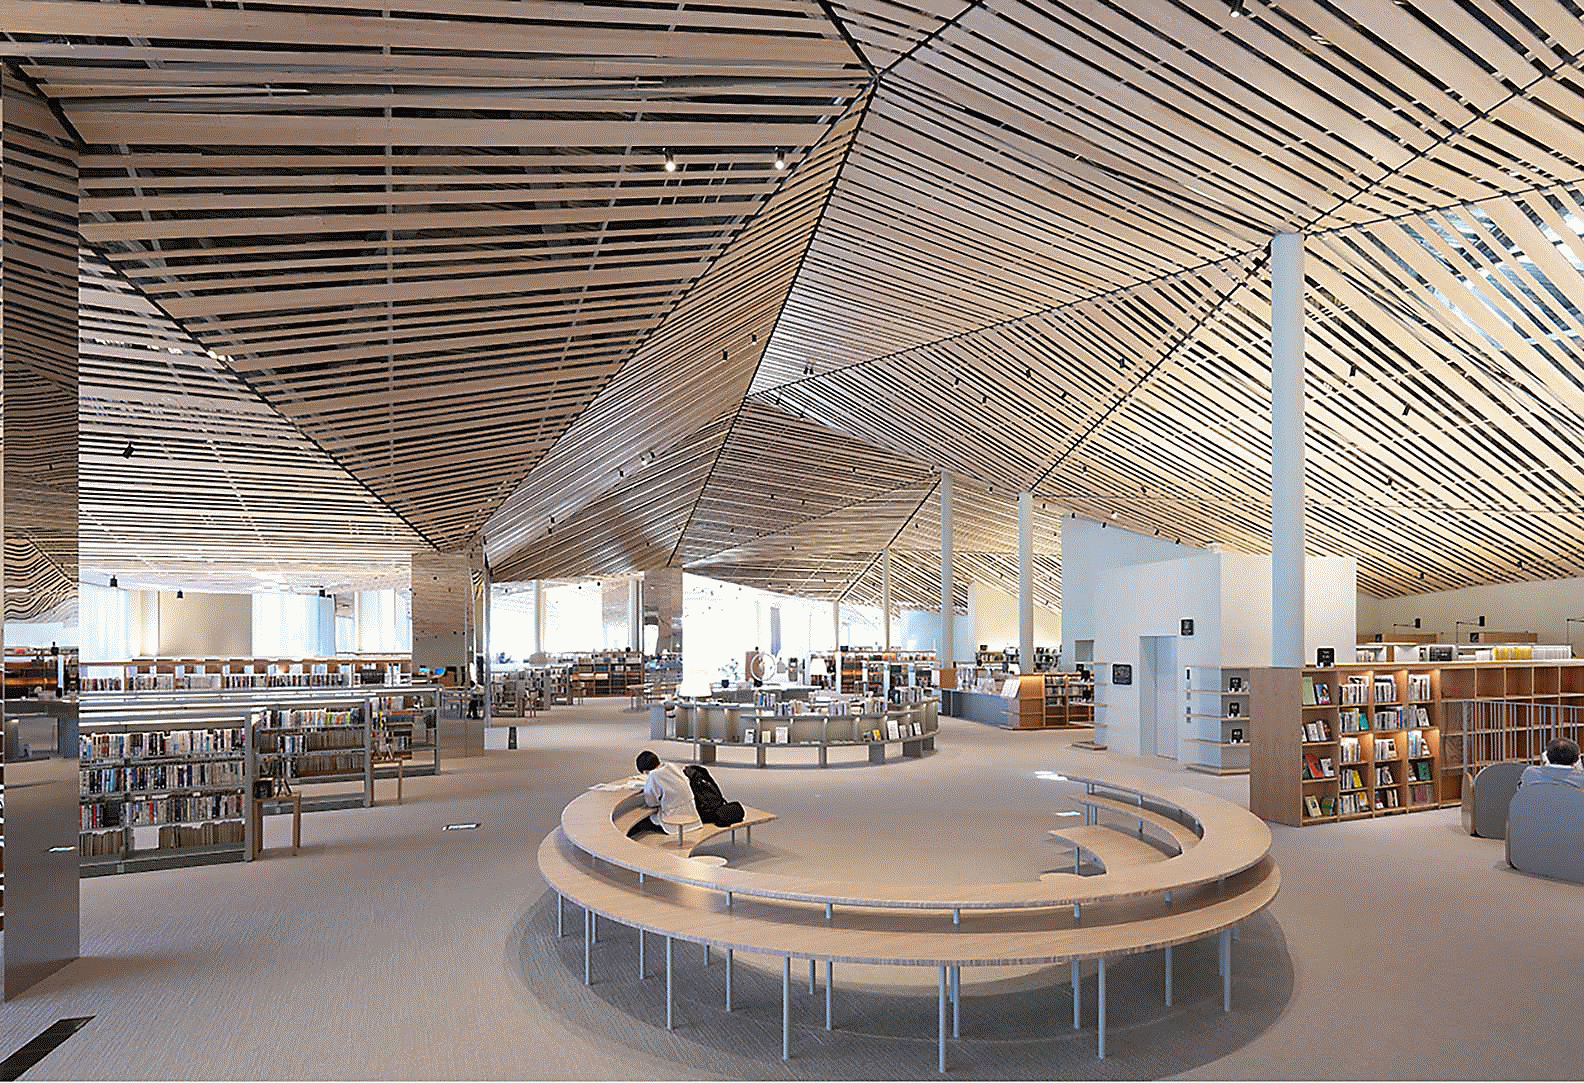 Snímek interiéru velké knihovny s propracovaným designem využívajícím mnoho rovných dřevěných prken na stropě, s vysokým rozlišením po celé ploše